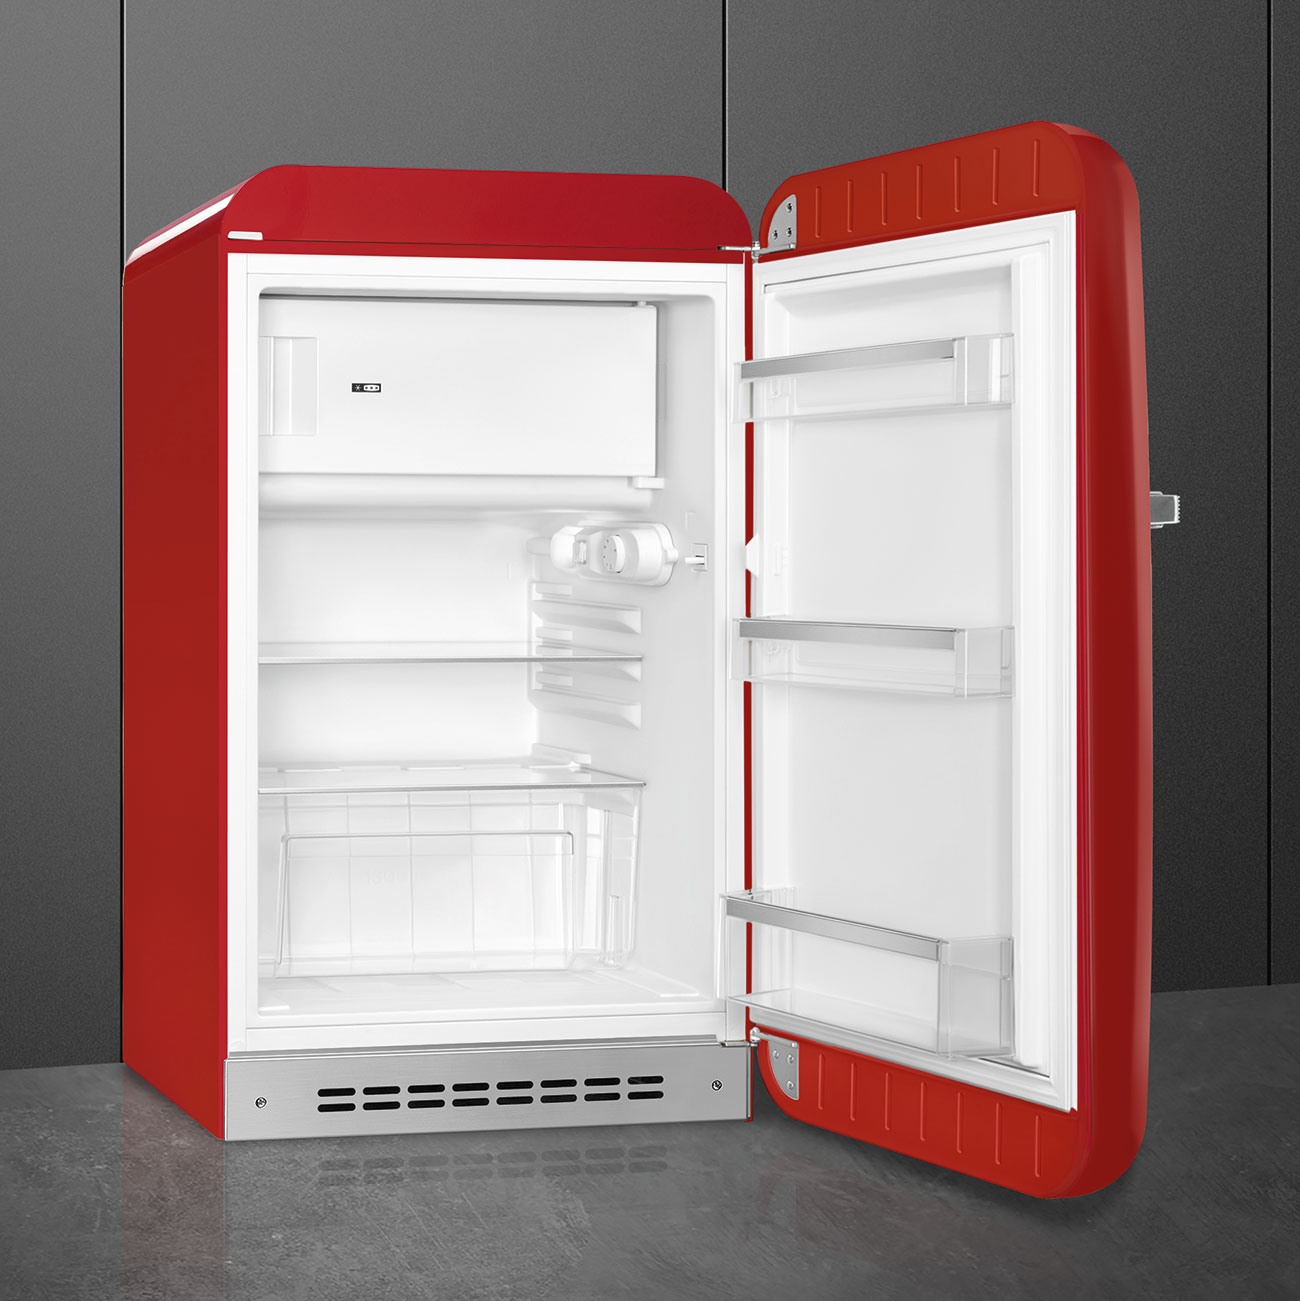 Rood koelkast - Smeg_5